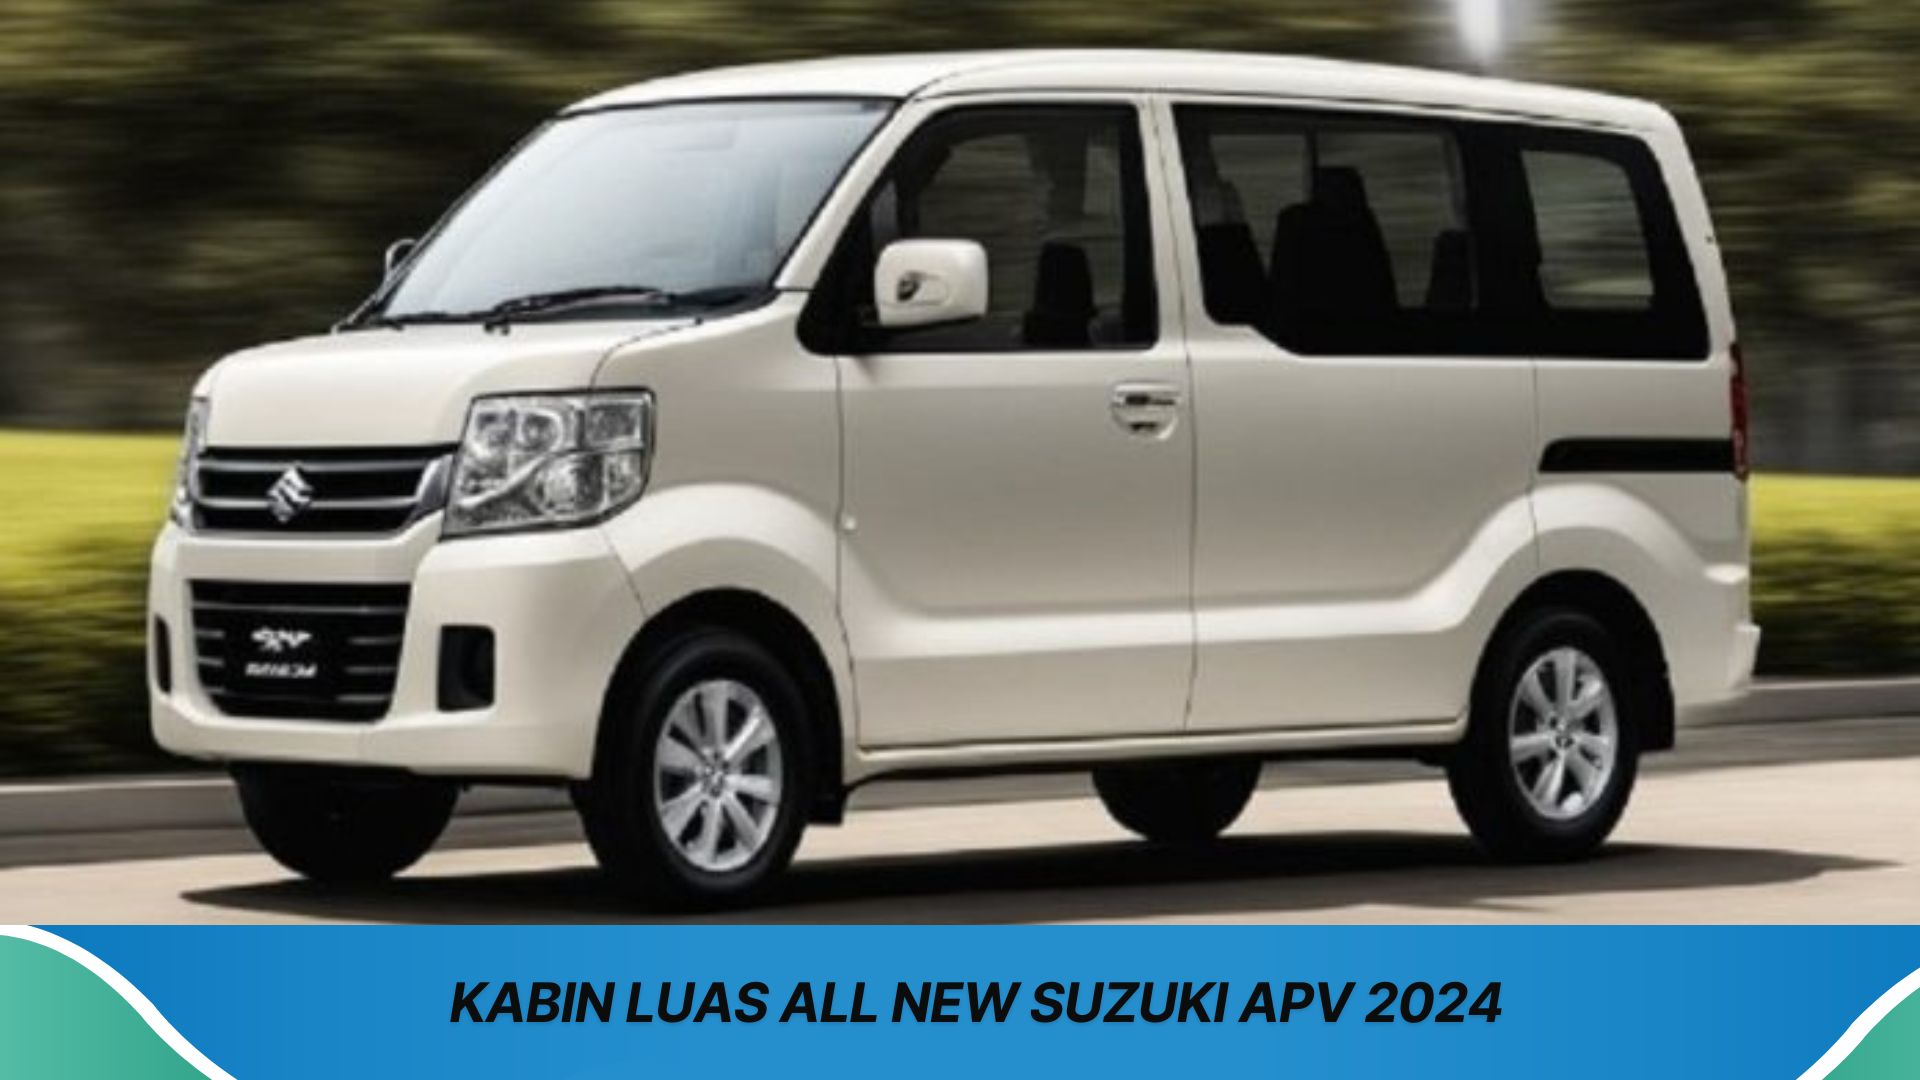 All New Suzuki APV 2024 Punya Desain Menarik dan Fitur Canggih Bikin Nyaman Bepergian dengan Kabin Luas